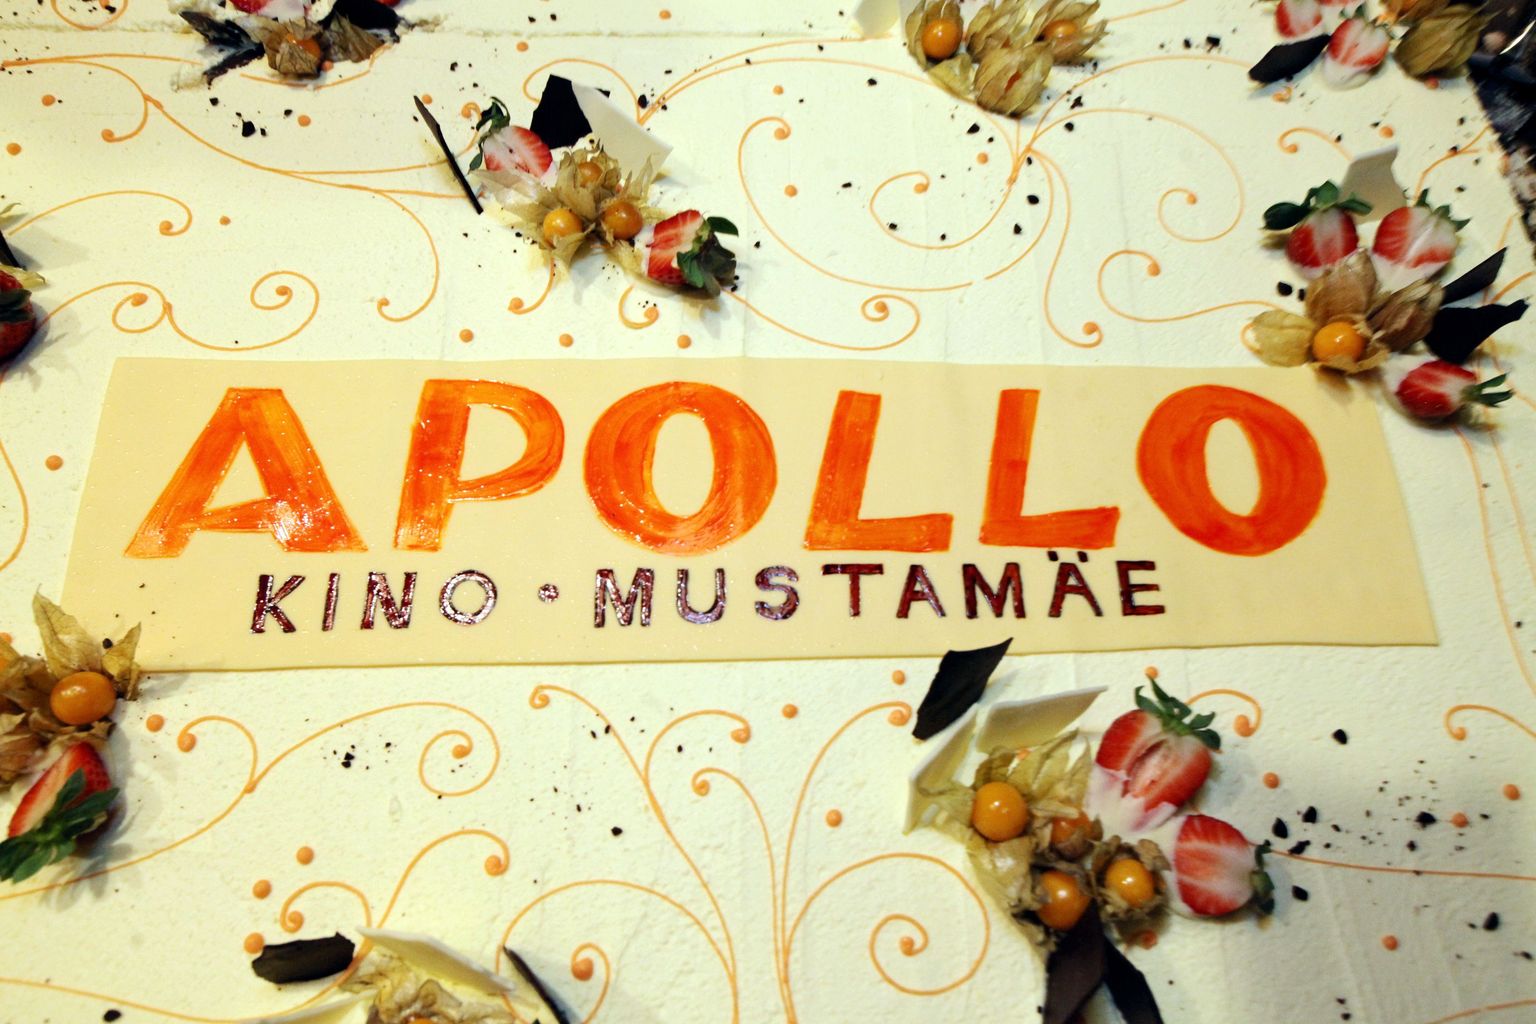 Открытие кинотеатре Apollo в торговом центре "Мустамяэ". Снимок иллюстративный.